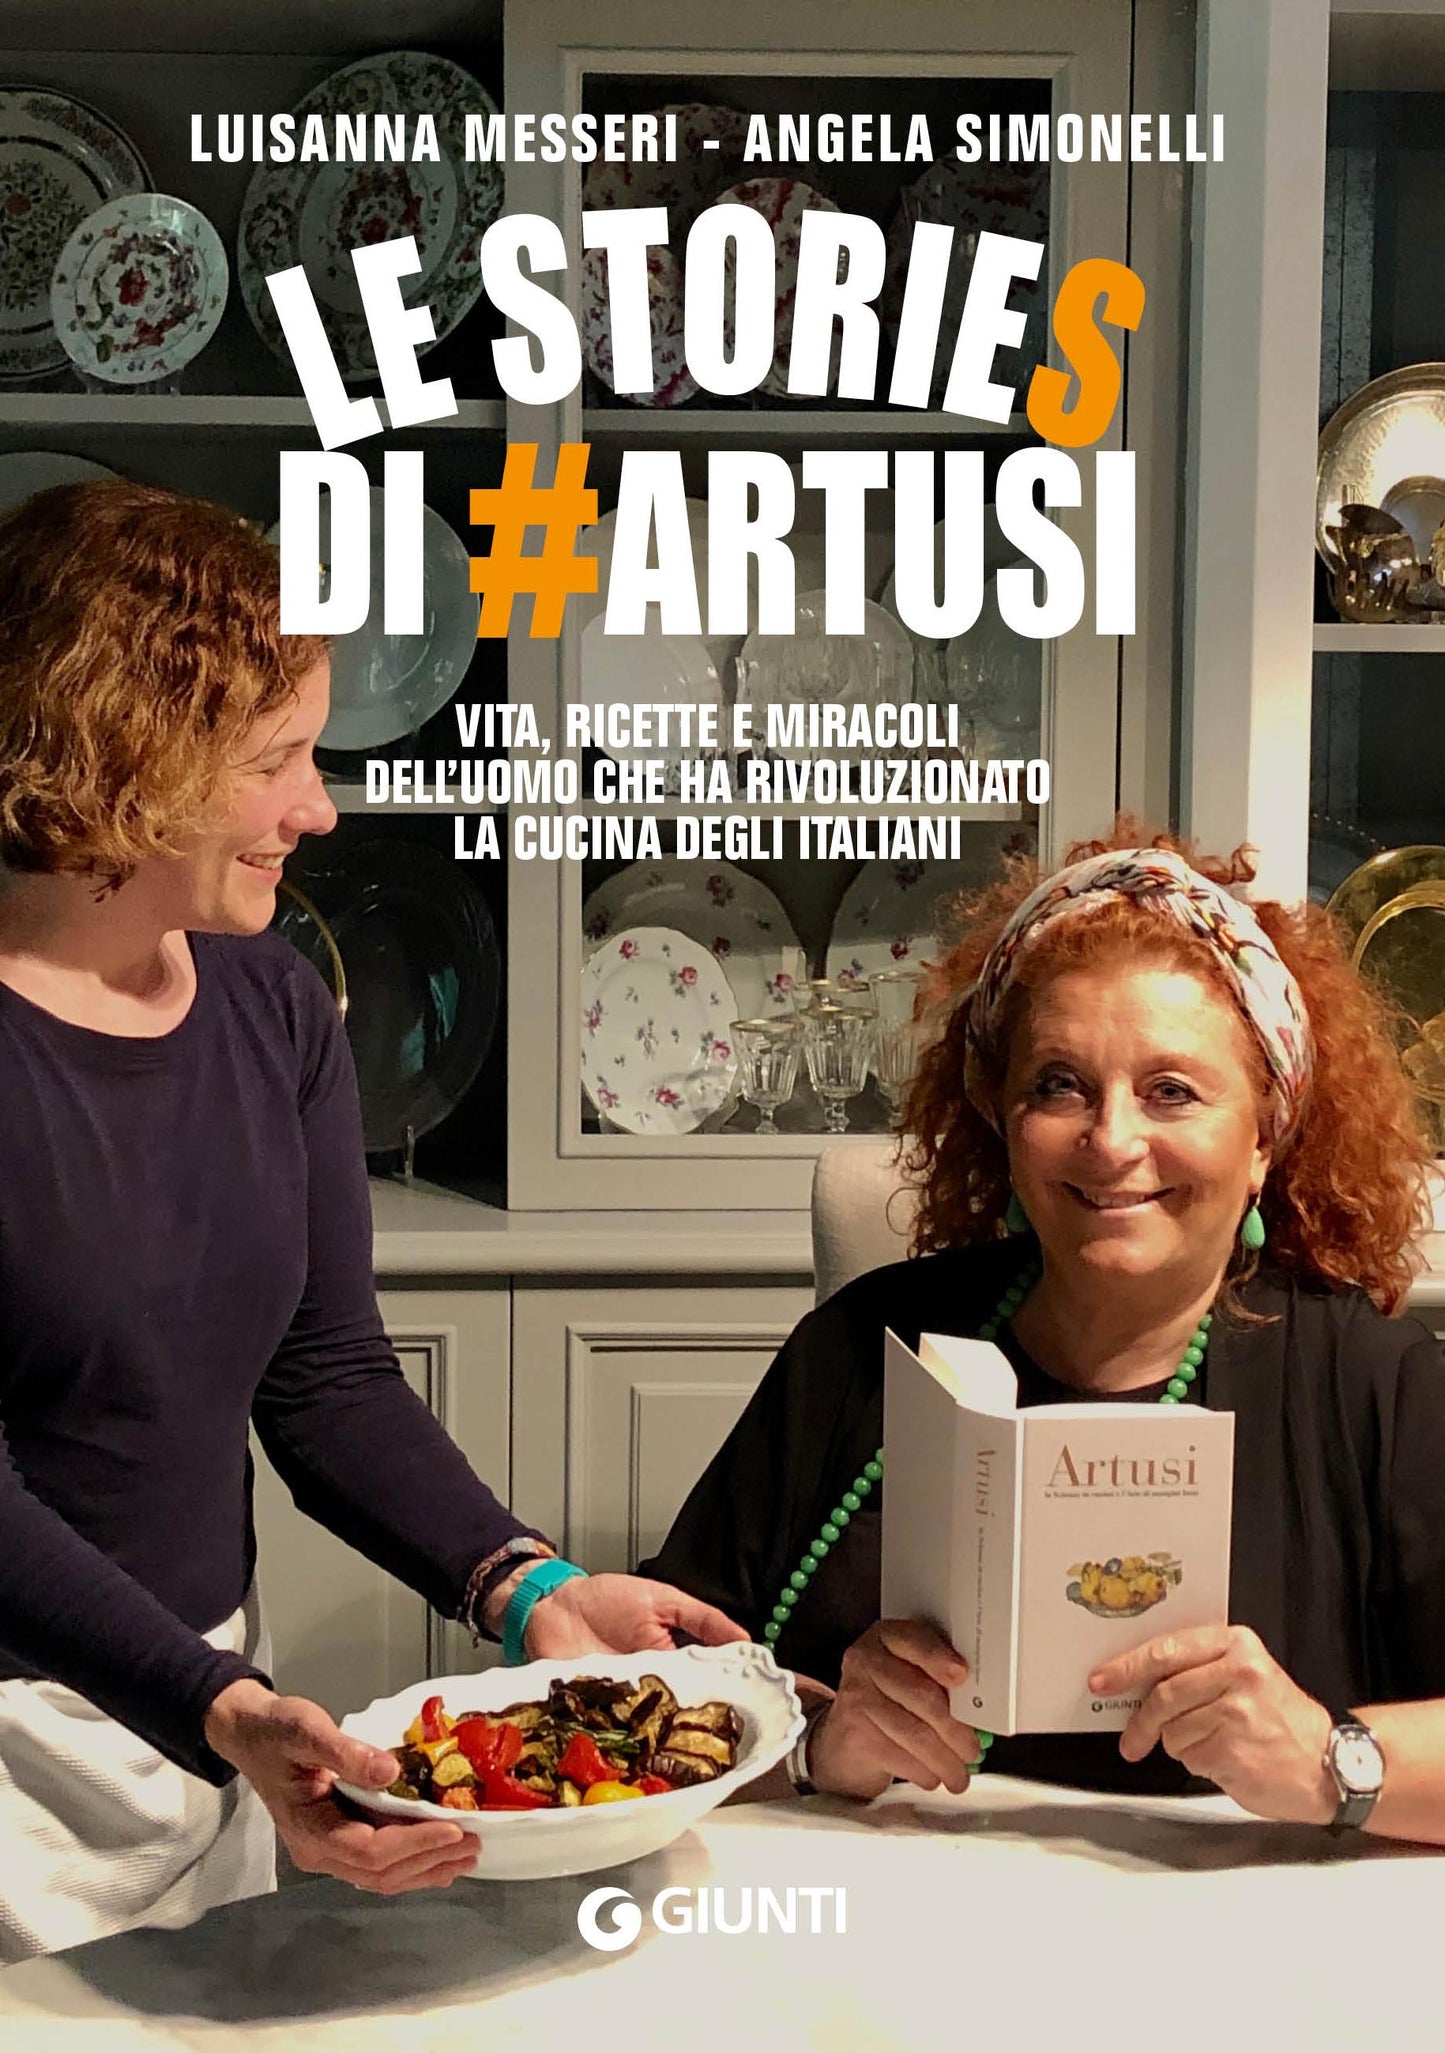 Le stories di #Artusi::Vita, ricette e miracoli dell'uomo che ha rivoluzionato la cucina degli italiani